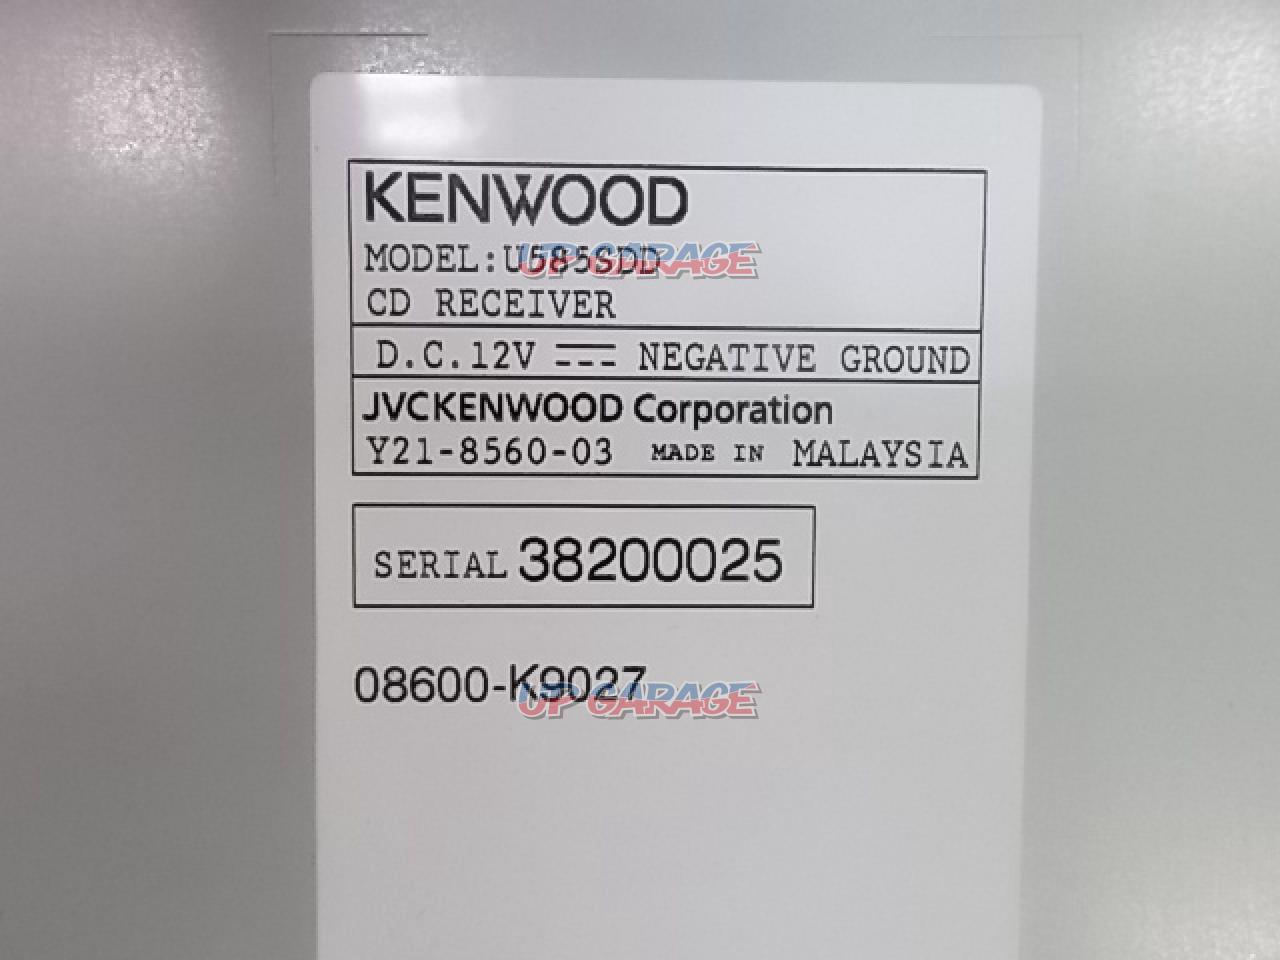 RX 1805-703 KENWOOD U585SDD 1 DIN: CD / USB Deck | CD+USB/i-Pod